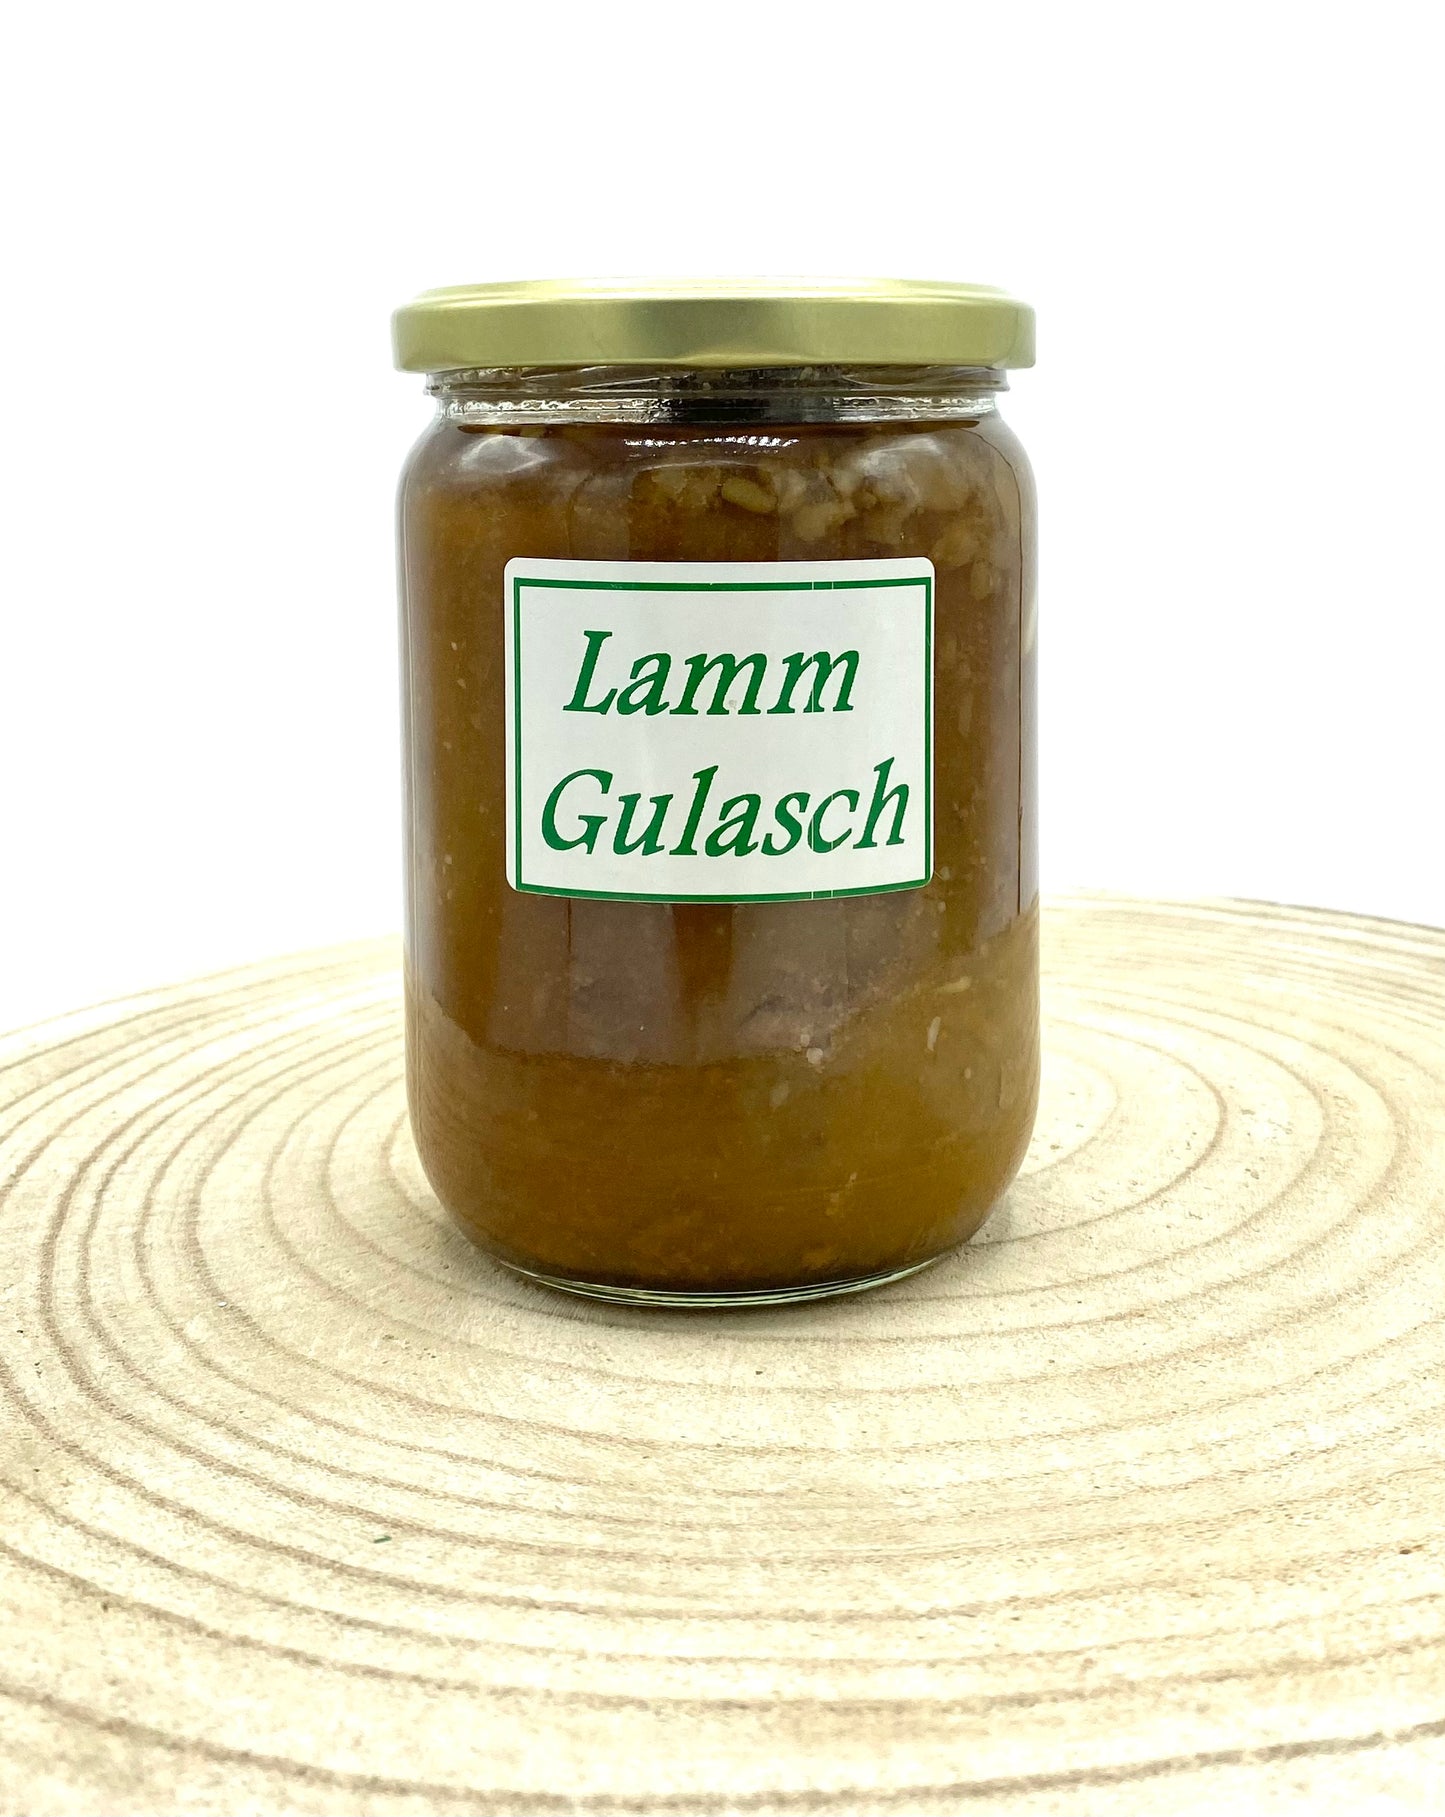 Lamm Gulasch